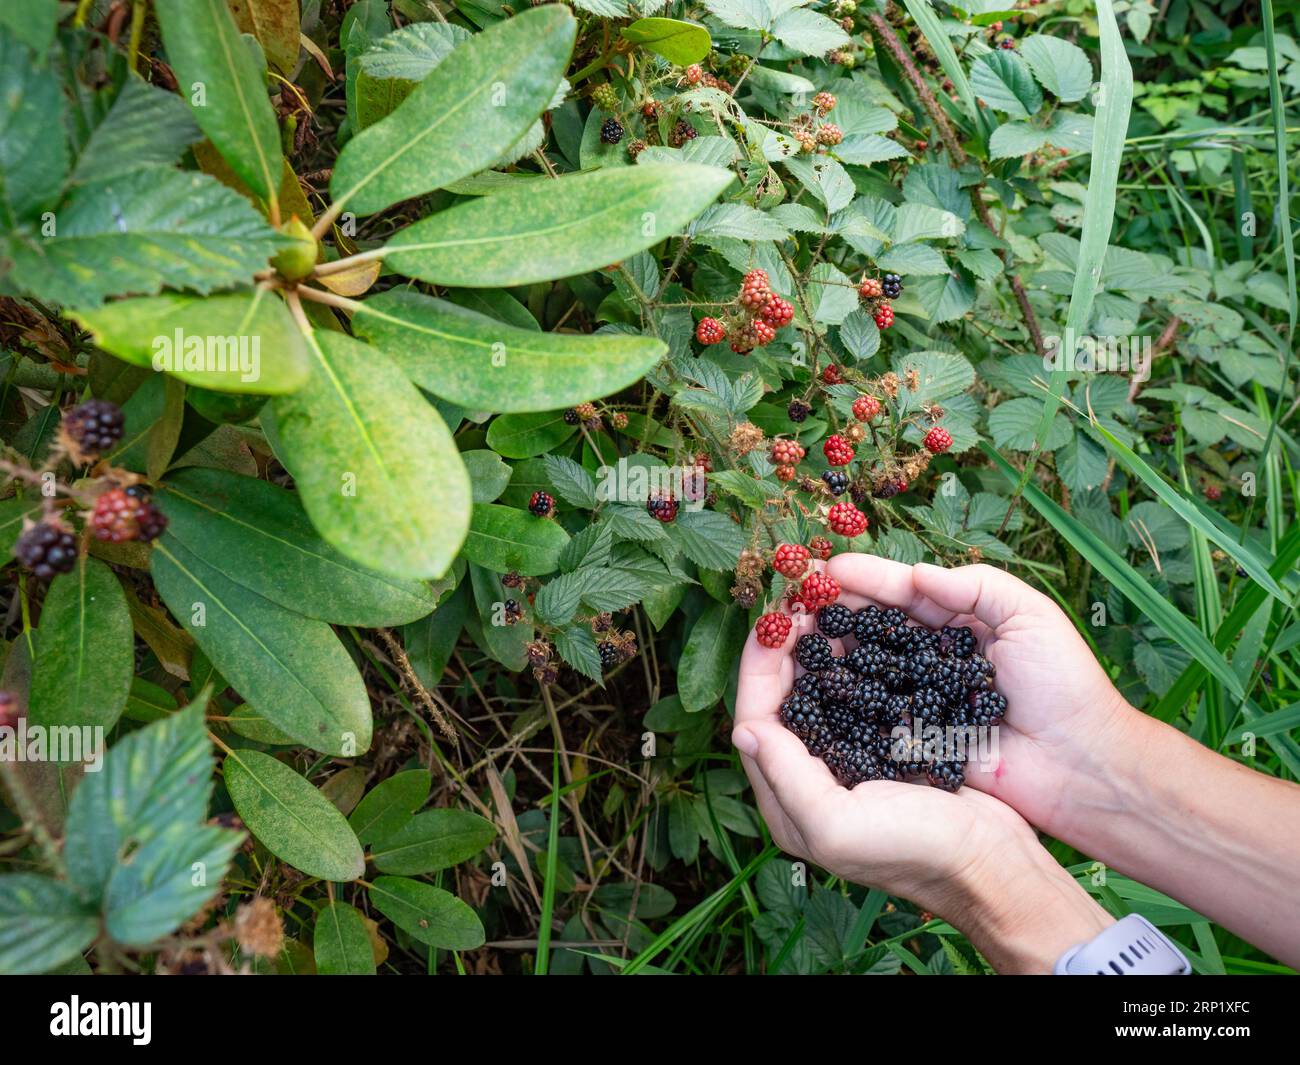 Brombeeren wachsen reifer Zweig natürliche Nahrung im Wald. Reife brombeerfrucht - Rubus fruticosus Zweig mit grünen Blättern Farm. Stockfoto